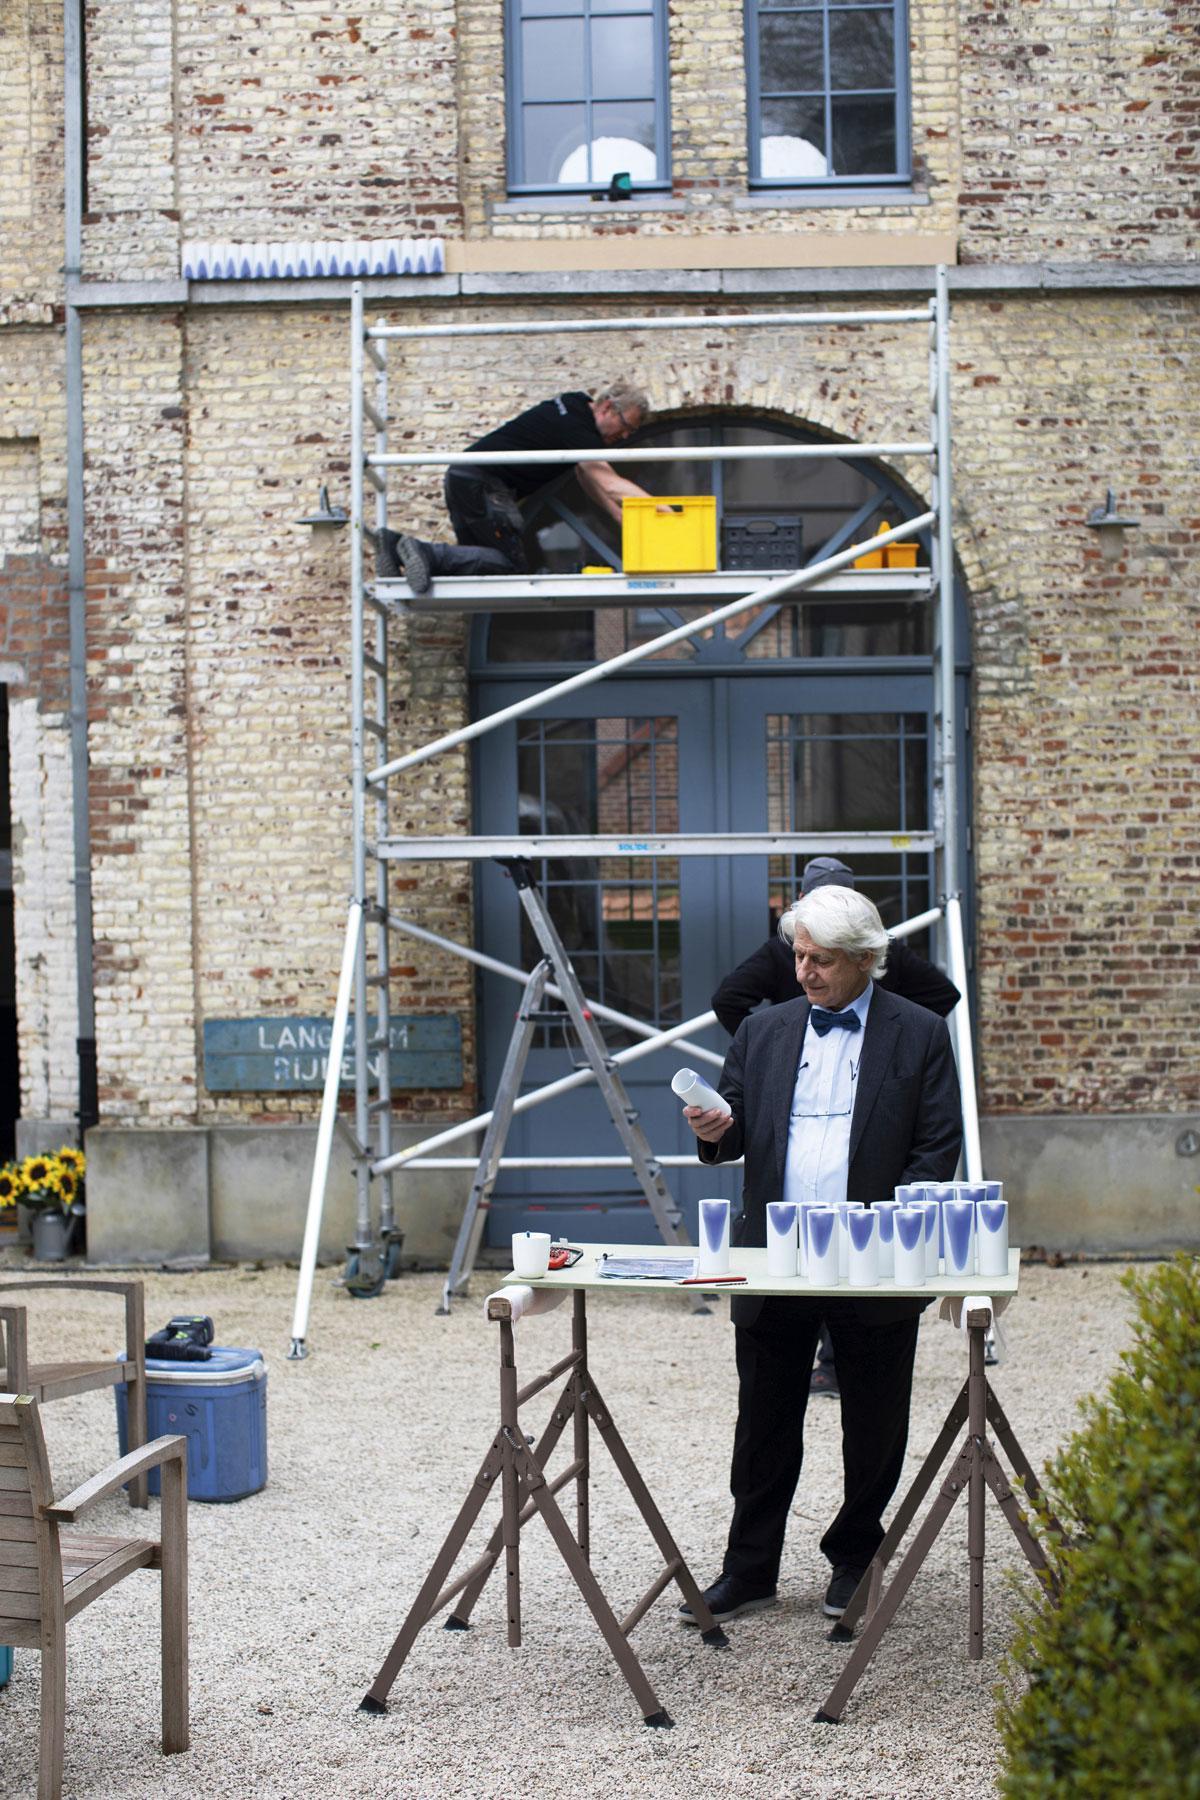 Le Bleu Stockmans Koen et Karo ont commandé l’œuvre d’art en 2014 mais n’ont jamais trouvé le bon endroit pour l’exposer. La façade de la dépendance semble aujourd’hui la destination idéale pour l’œuvre d’art, et c’est ce que pense aussi Piet Stockmans.